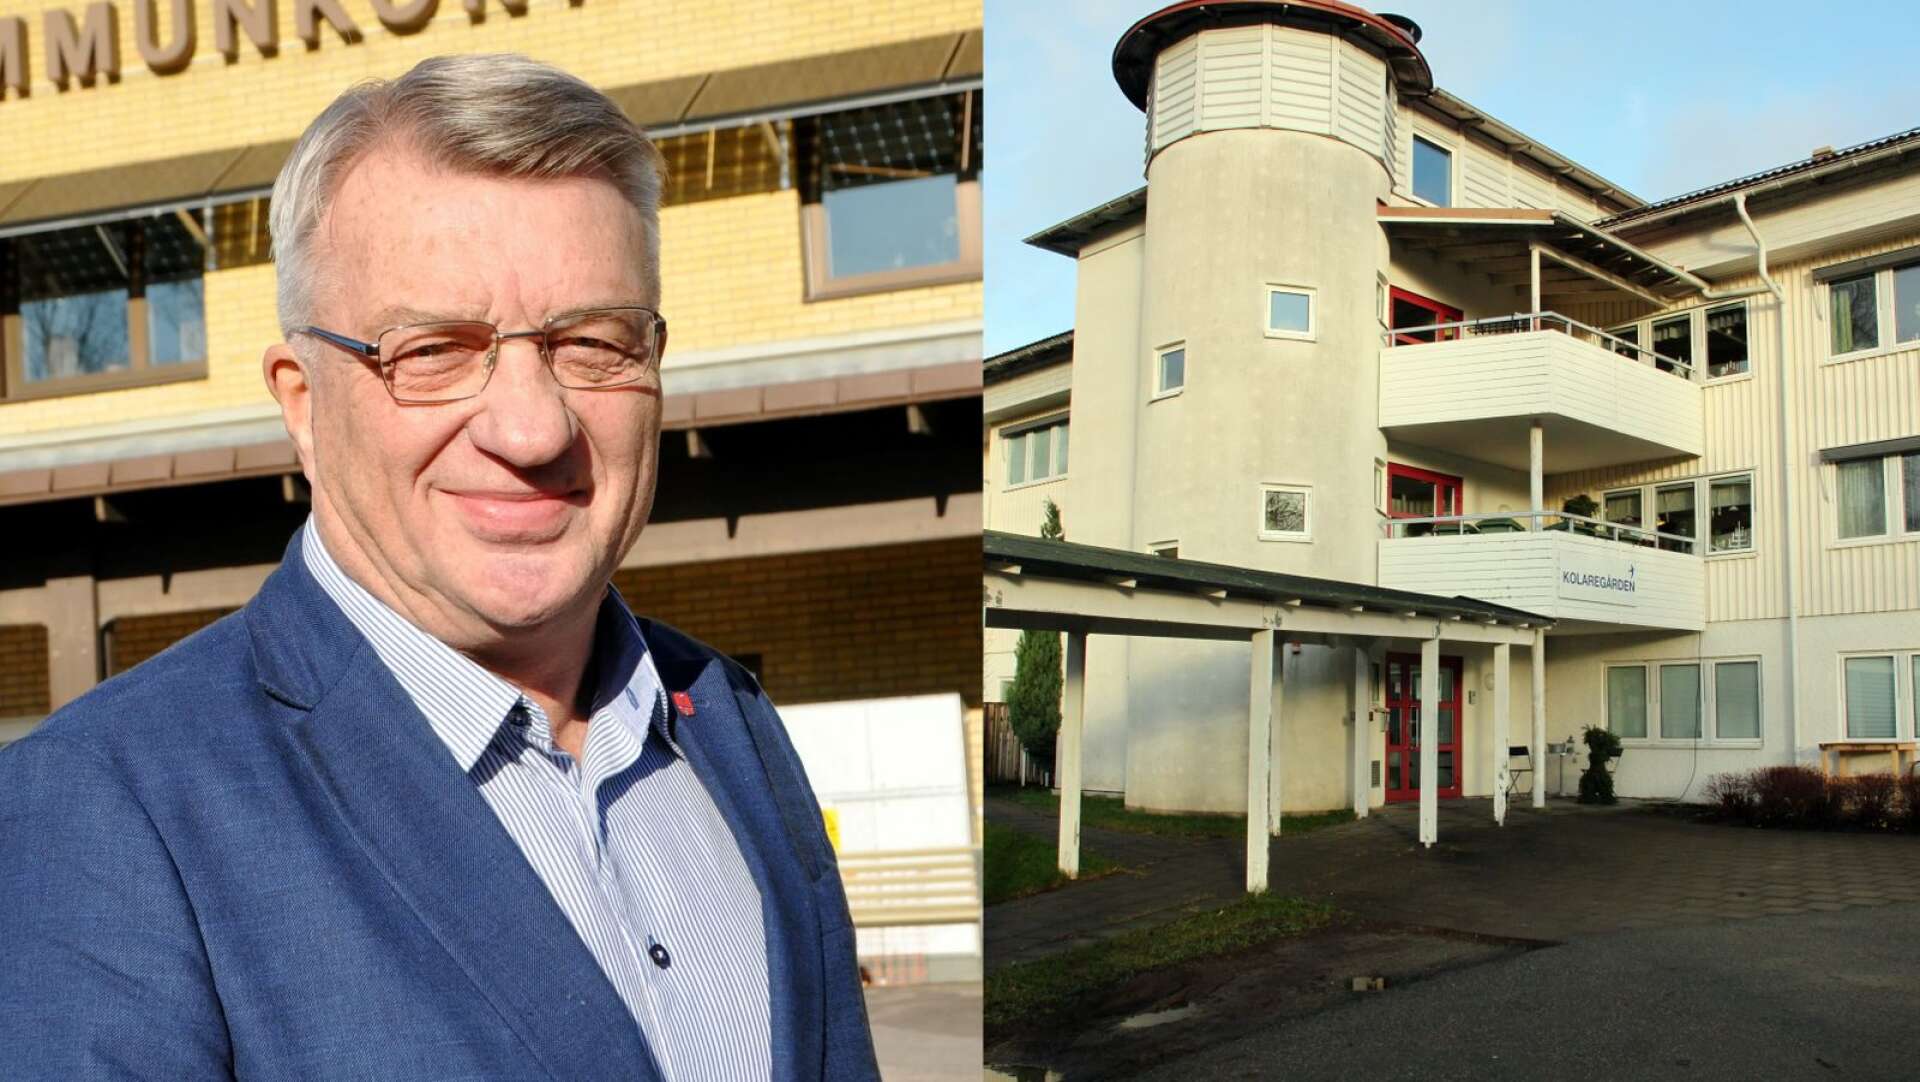 Bengtsfors kommun har haft samtal med Kommunal om sjukskrivningarna på Kolaregården, svarar kommunstyrelsens ordförande Stig Bertilsson.